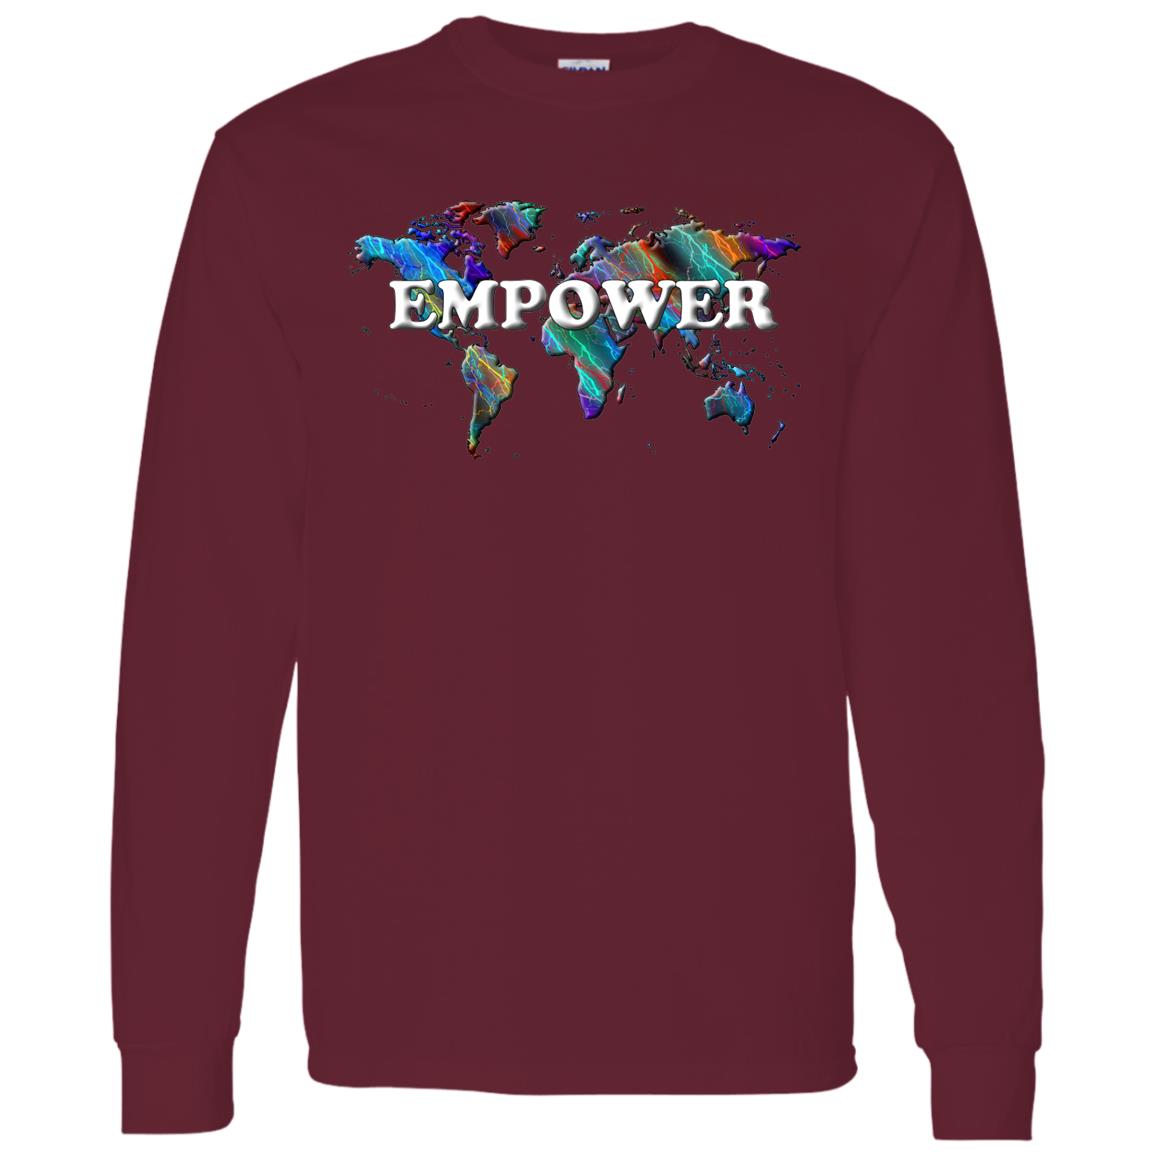 Empower Long Sleeve T-Shirt